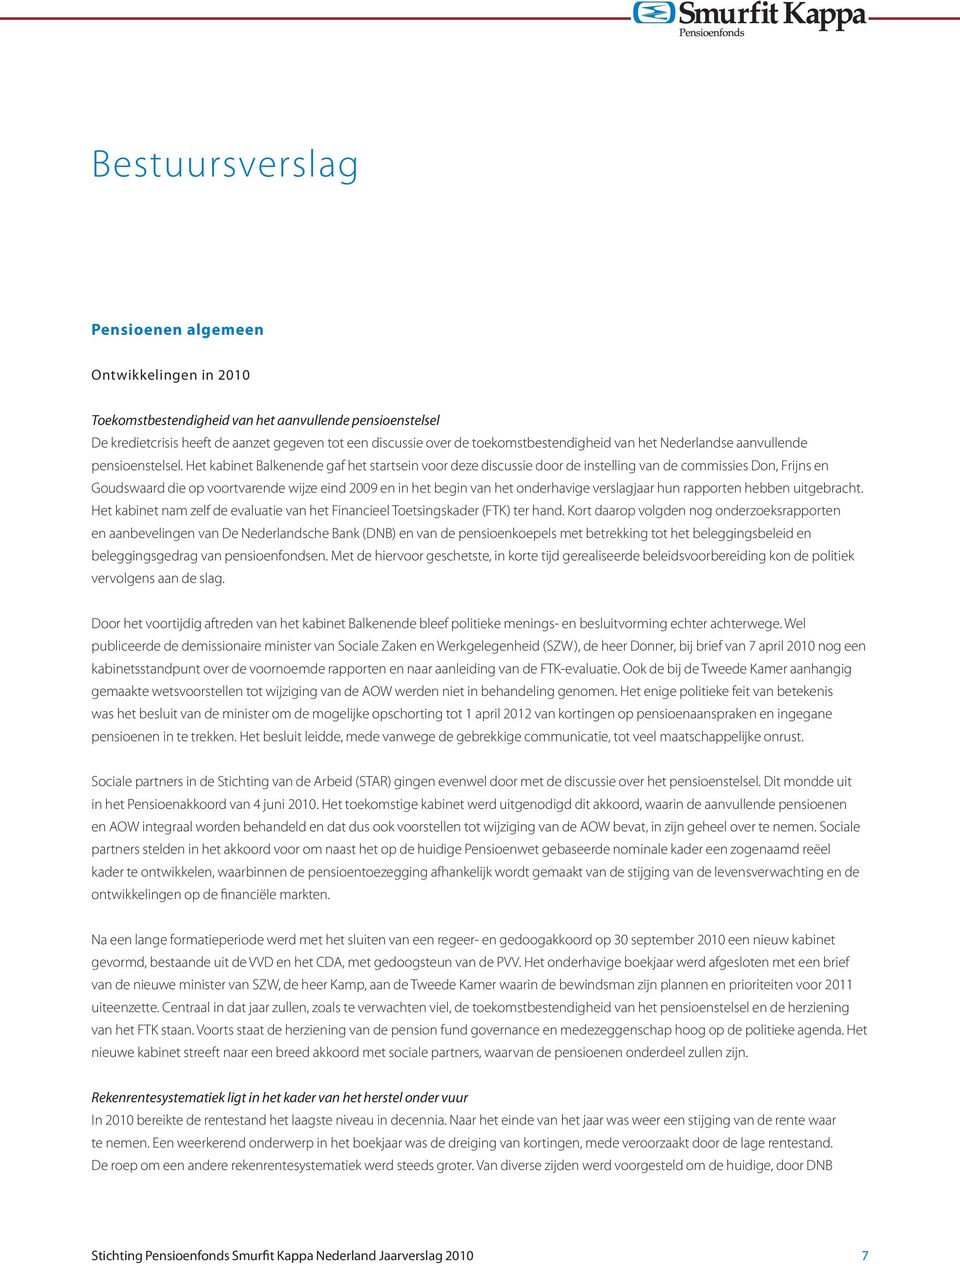 Het kabinet Balkenende gaf het startsein voor deze discussie door de instelling van de commissies Don, Frijns en Goudswaard die op voortvarende wijze eind 2009 en in het begin van het onderhavige